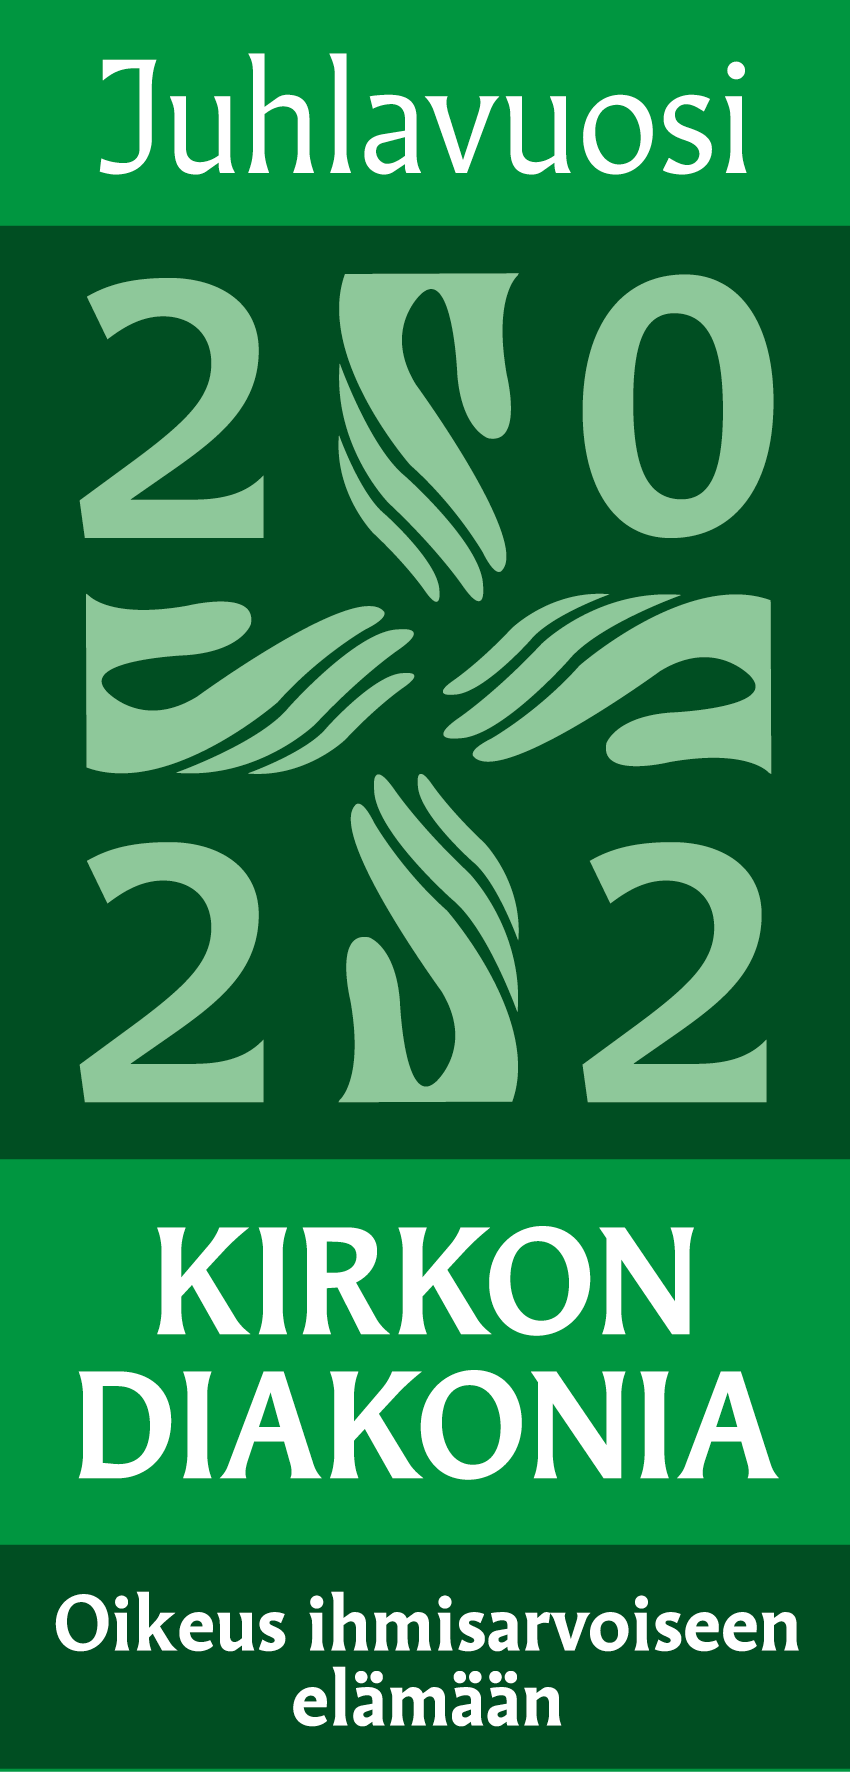 vihreävalkoinen diakonian juhlavuoden logo, jossa 4 kättä yhdessä ja vuosi 2022